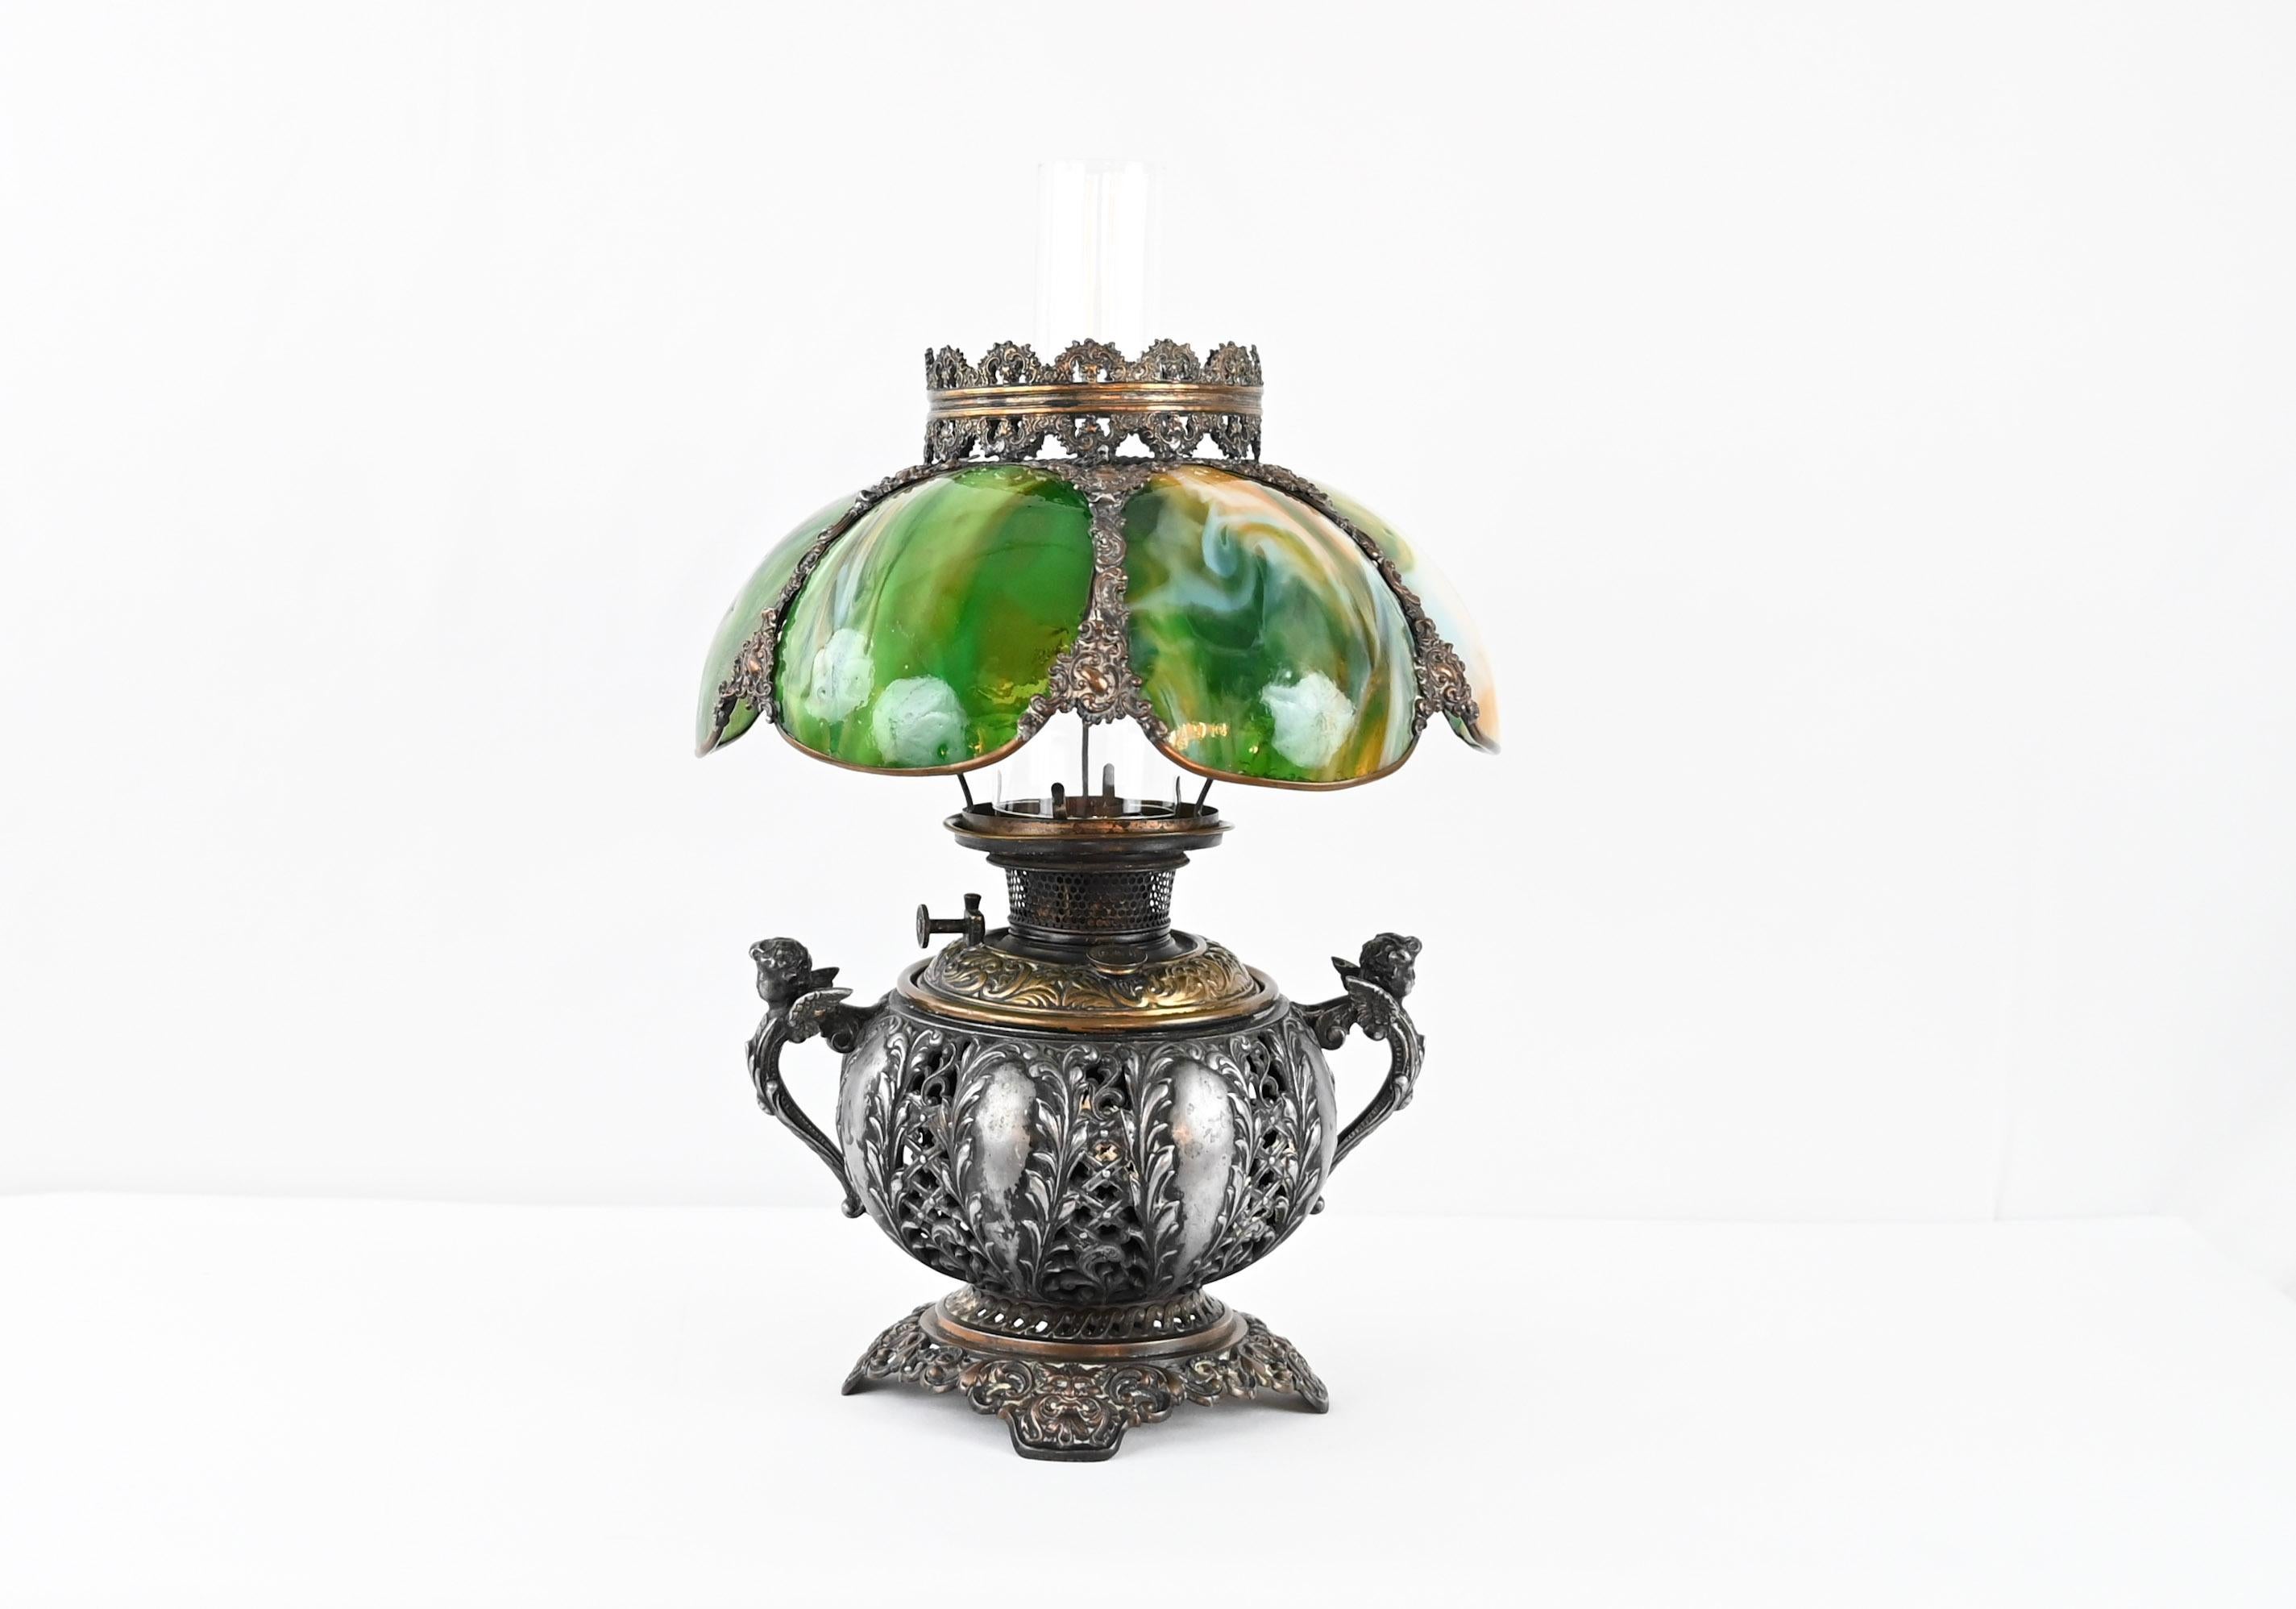 Ancienne lampe à huile Bradley & Hubbard de 1885-1894, B&H gravé sur la base. La lampe est fabriquée en laiton antique et en fonte très ornée, dorée à l'ancienne et avec de magnifiques détails. Abat-jour original en verre peint à la main avec un